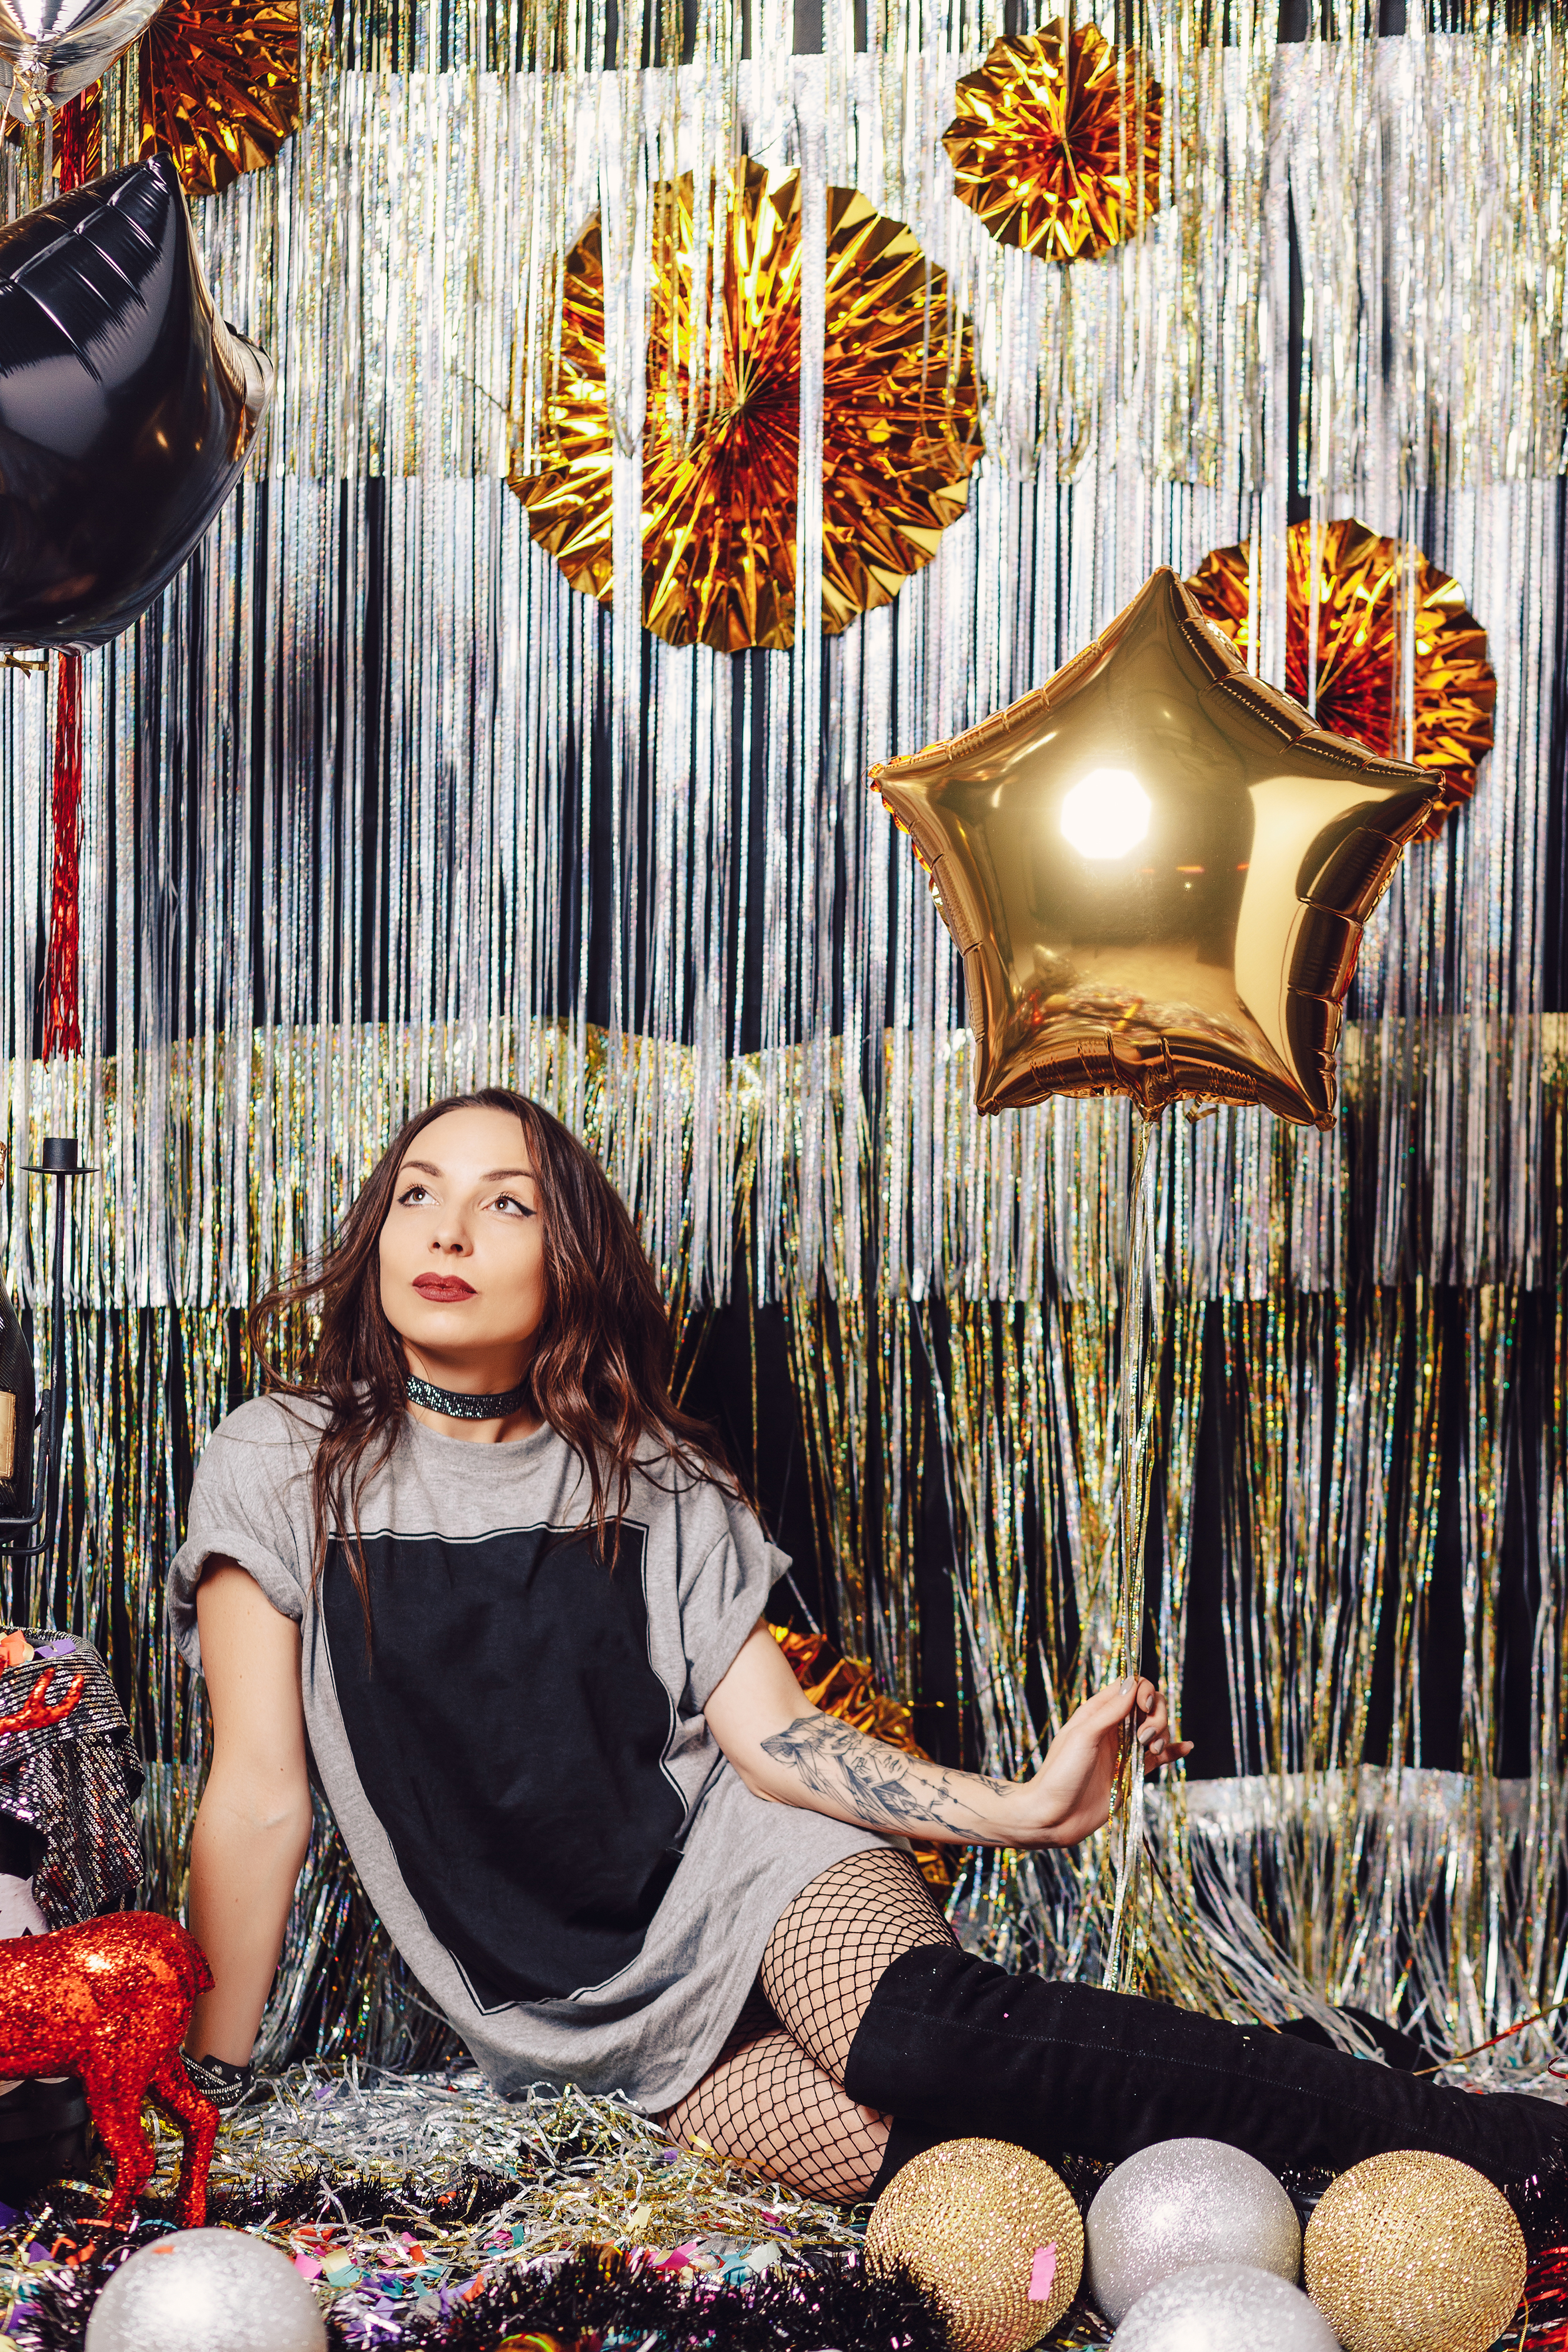 Adolescente sentada en un fondo de fiesta de cumpleaños con globos metálicos | Fuente: Freepik